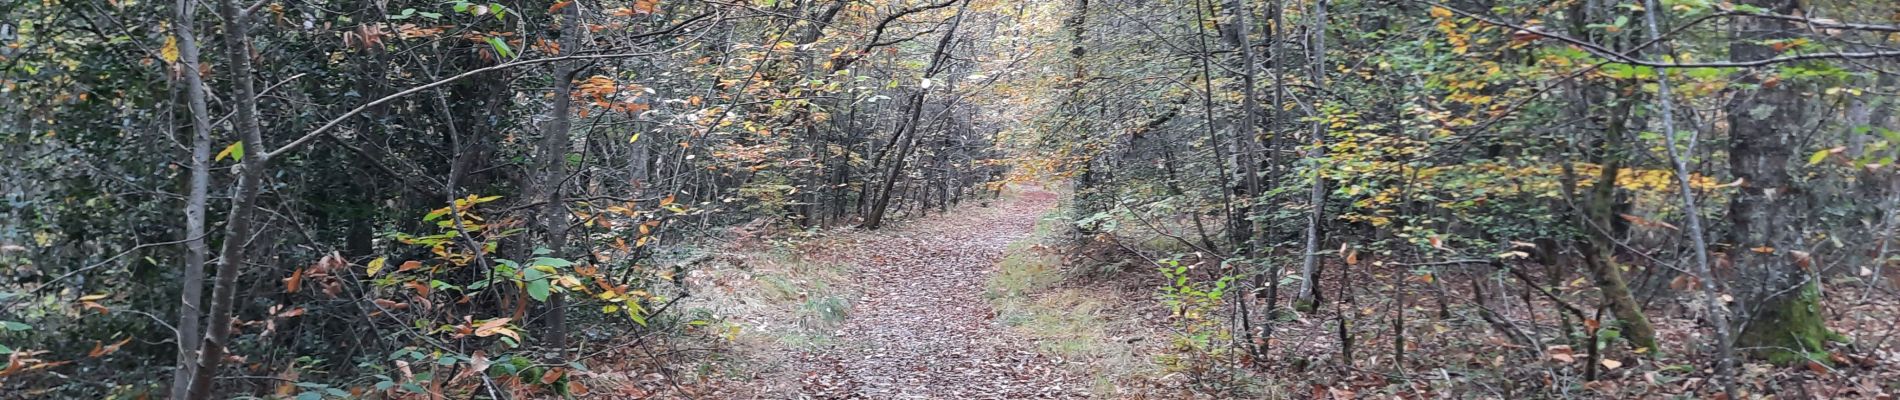 Trail Walking Cardeilhac - arboretum de cardeilhac  - Photo